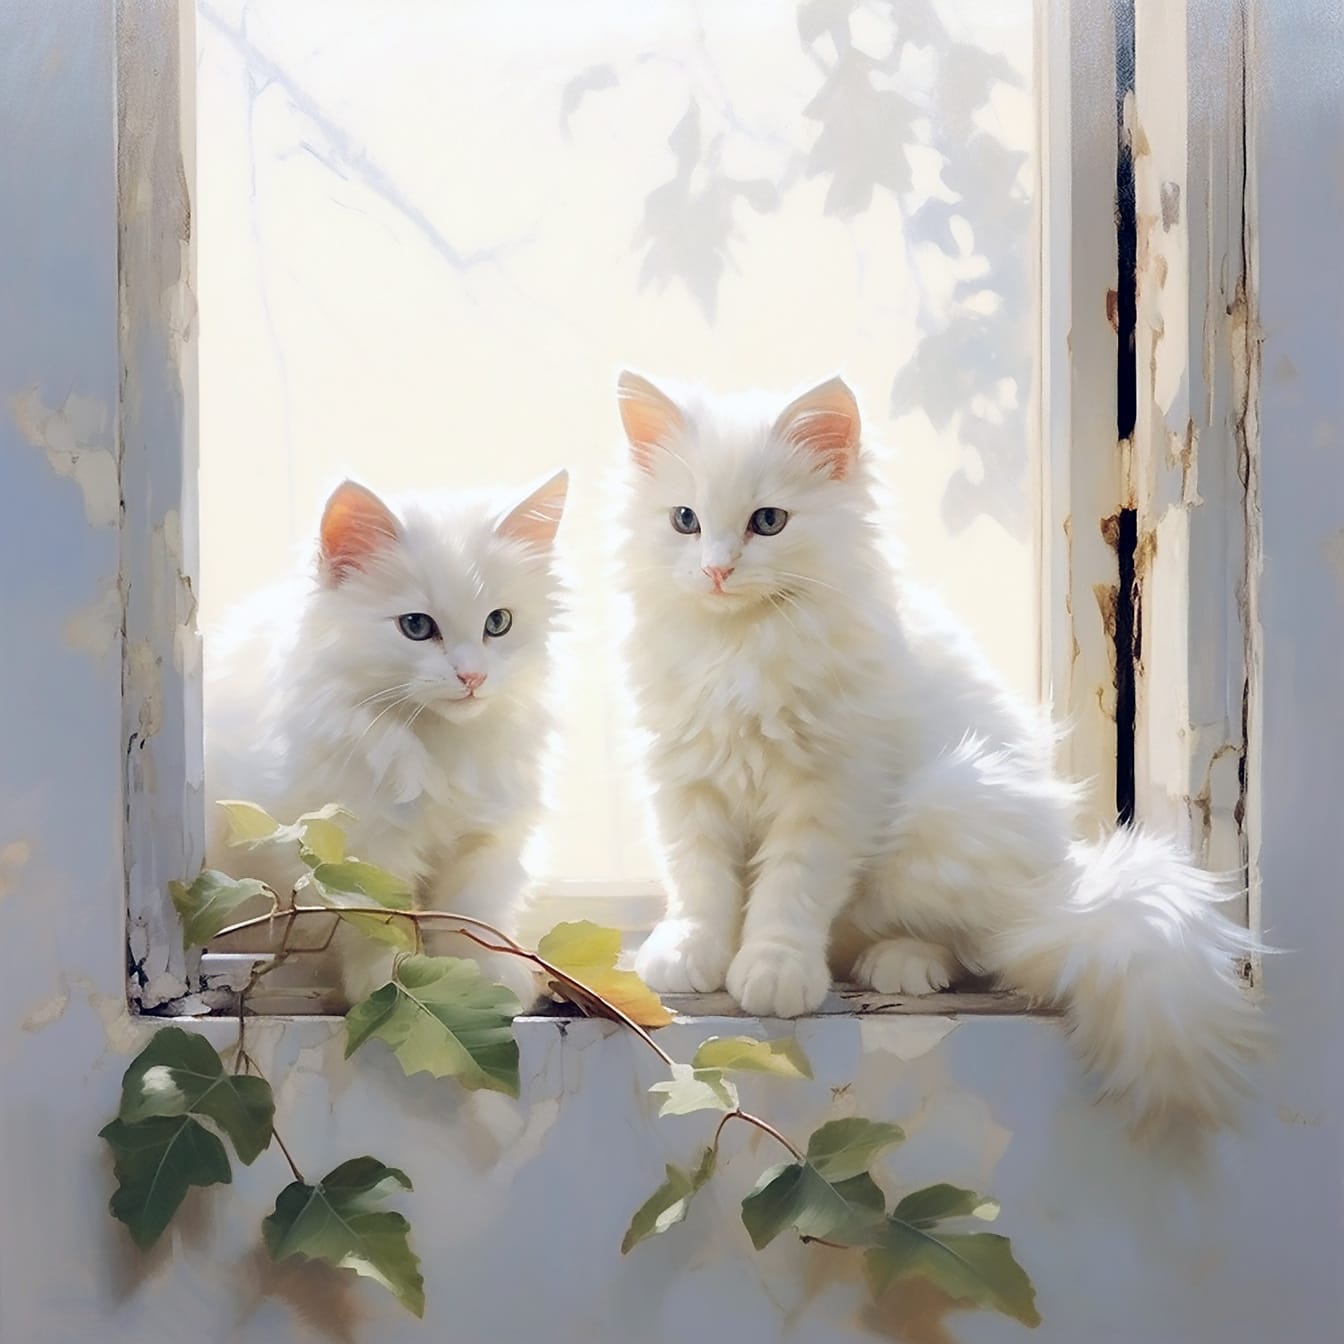 Gatinhos angora brancos bonitos sentados na ilustração digital da janela velha